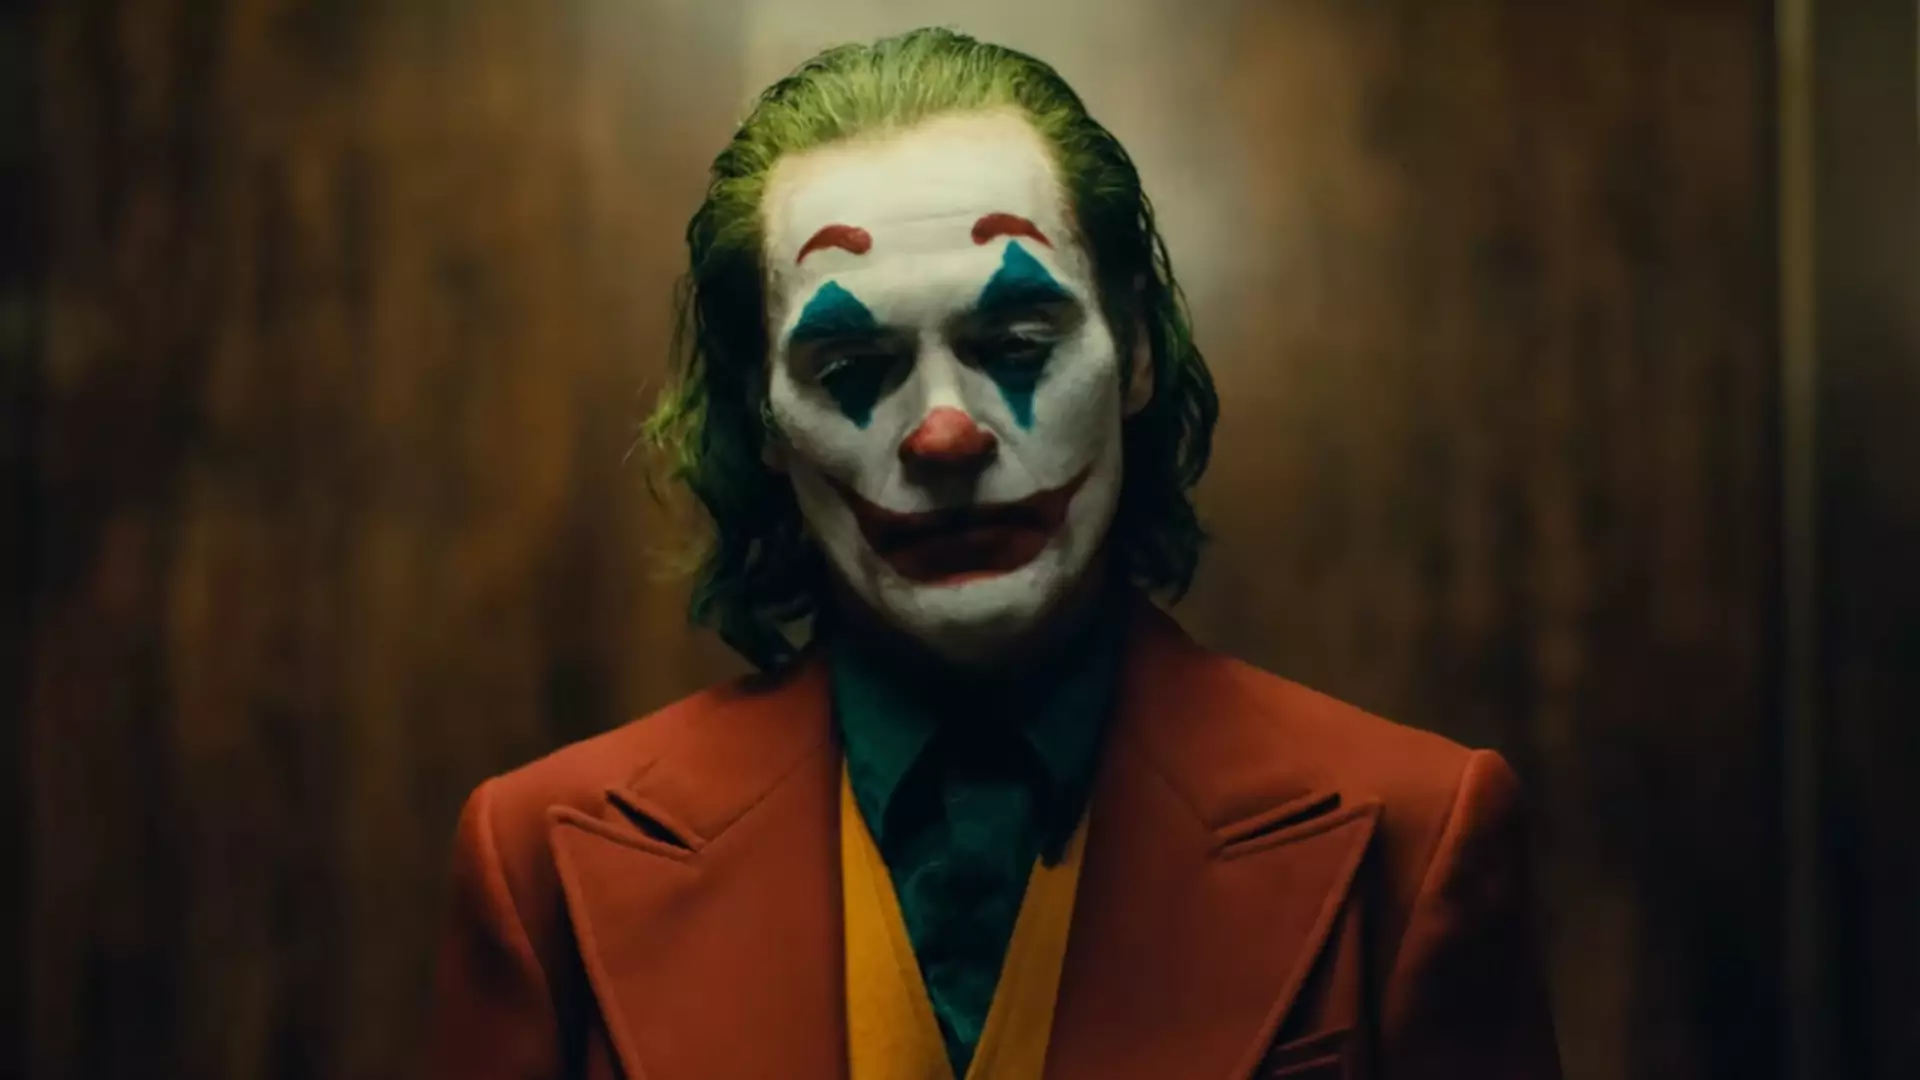 Jest pierwszy trailer filmu "Joker". W 2019 roku będziemy bać się klaunów